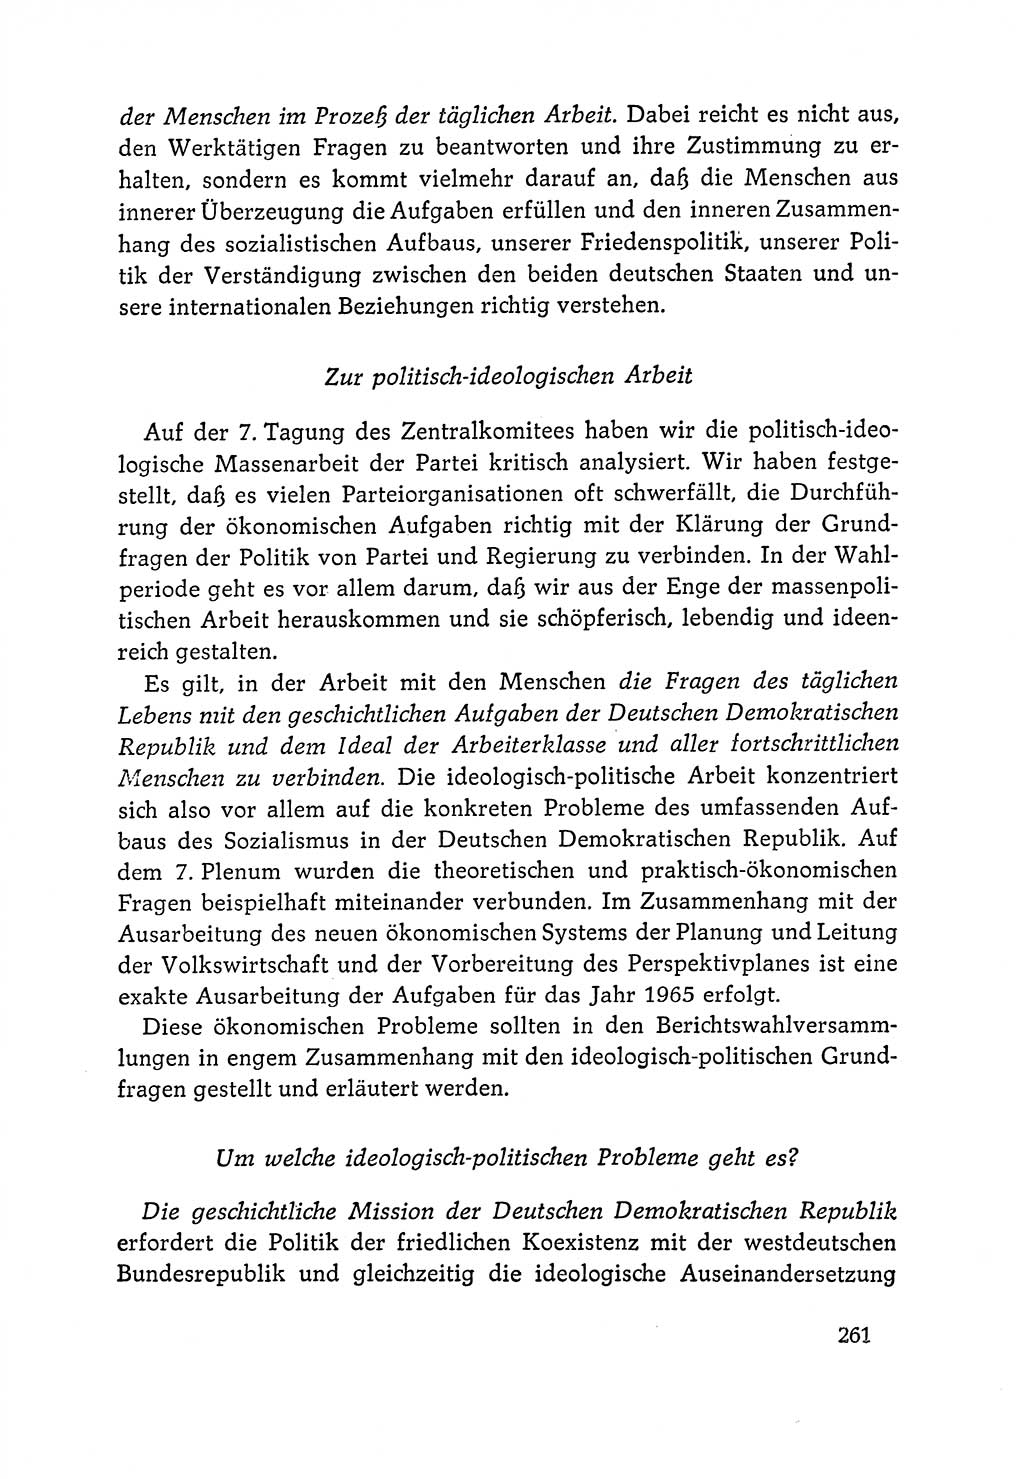 Dokumente der Sozialistischen Einheitspartei Deutschlands (SED) [Deutsche Demokratische Republik (DDR)] 1964-1965, Seite 261 (Dok. SED DDR 1964-1965, S. 261)